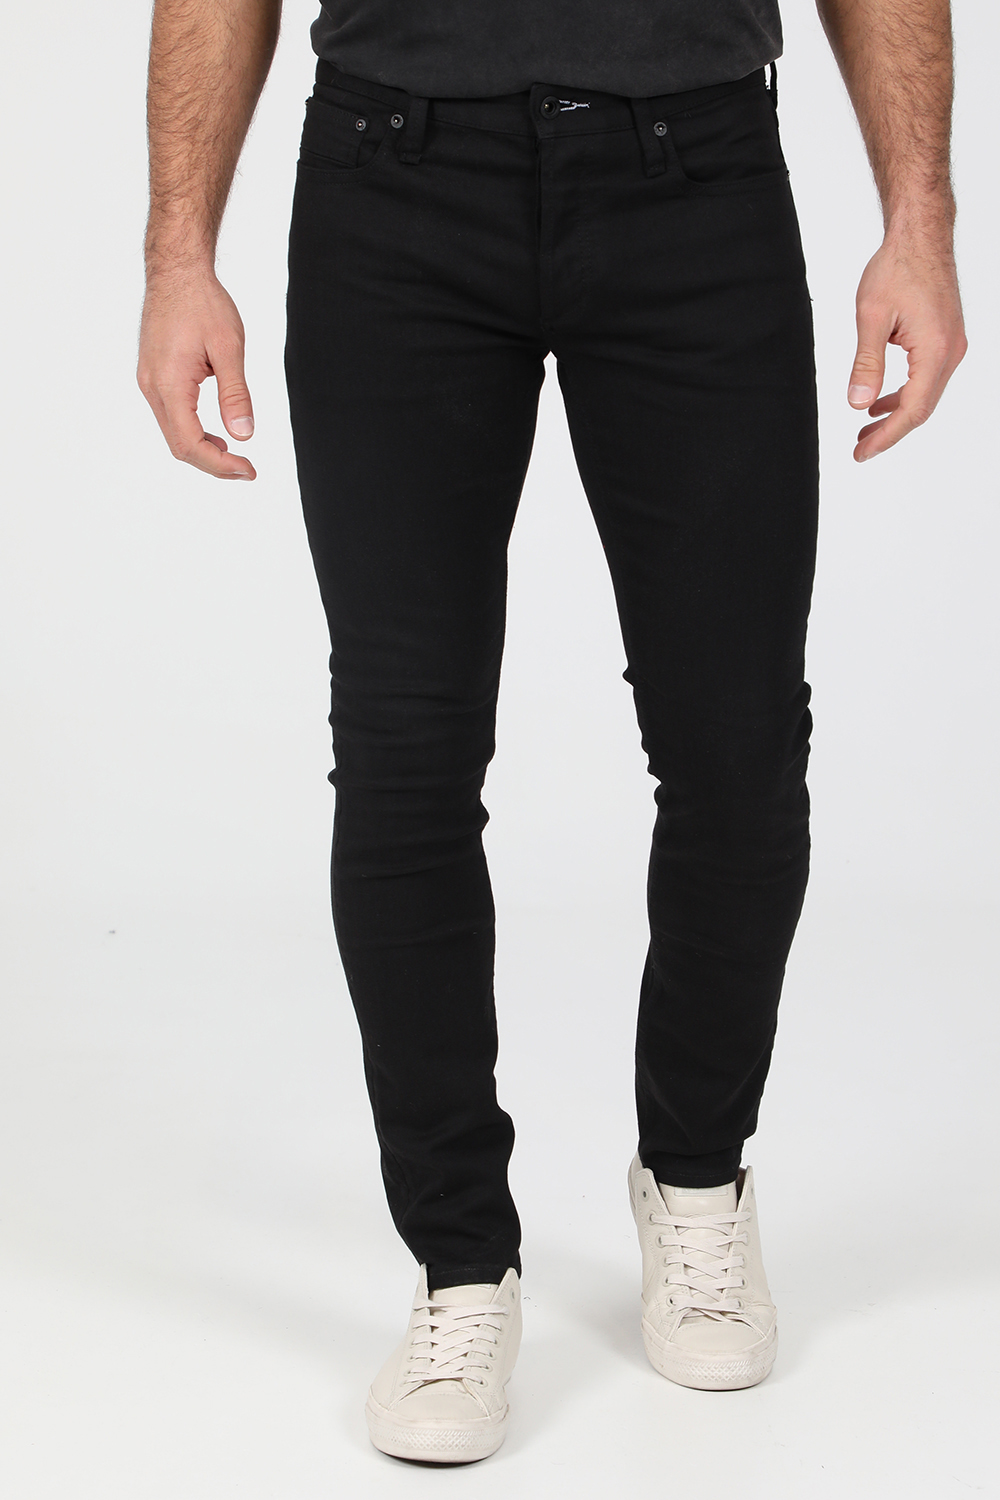 Ανδρικά/Ρούχα/Τζίν/Skinny DENHAM - Ανδρικό jean παντελόνι DENHAM BOLT μαύρο